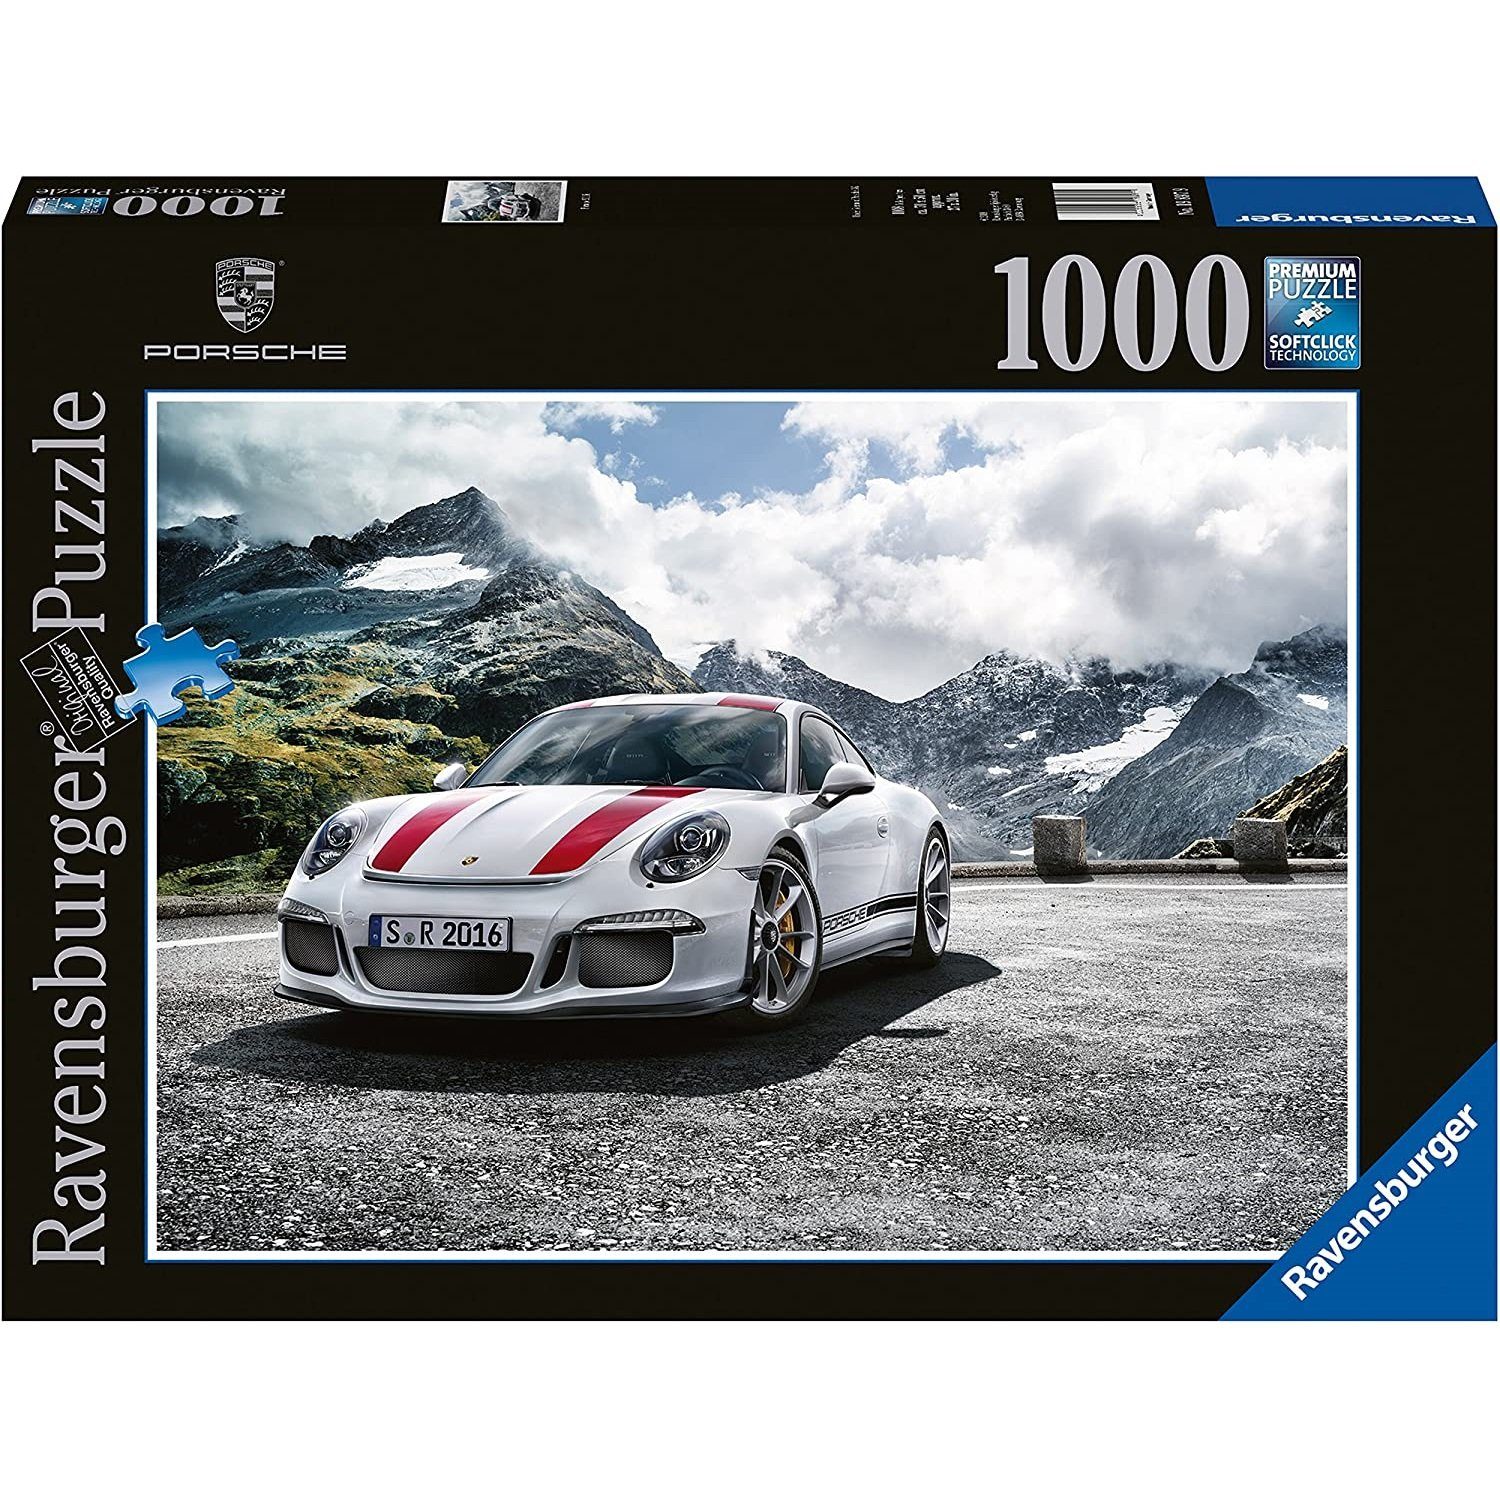 Teile Porsche 911 1000 Puzzleteile Ravensburger Ravensburger - Puzzle R, 1000 Puzzle,